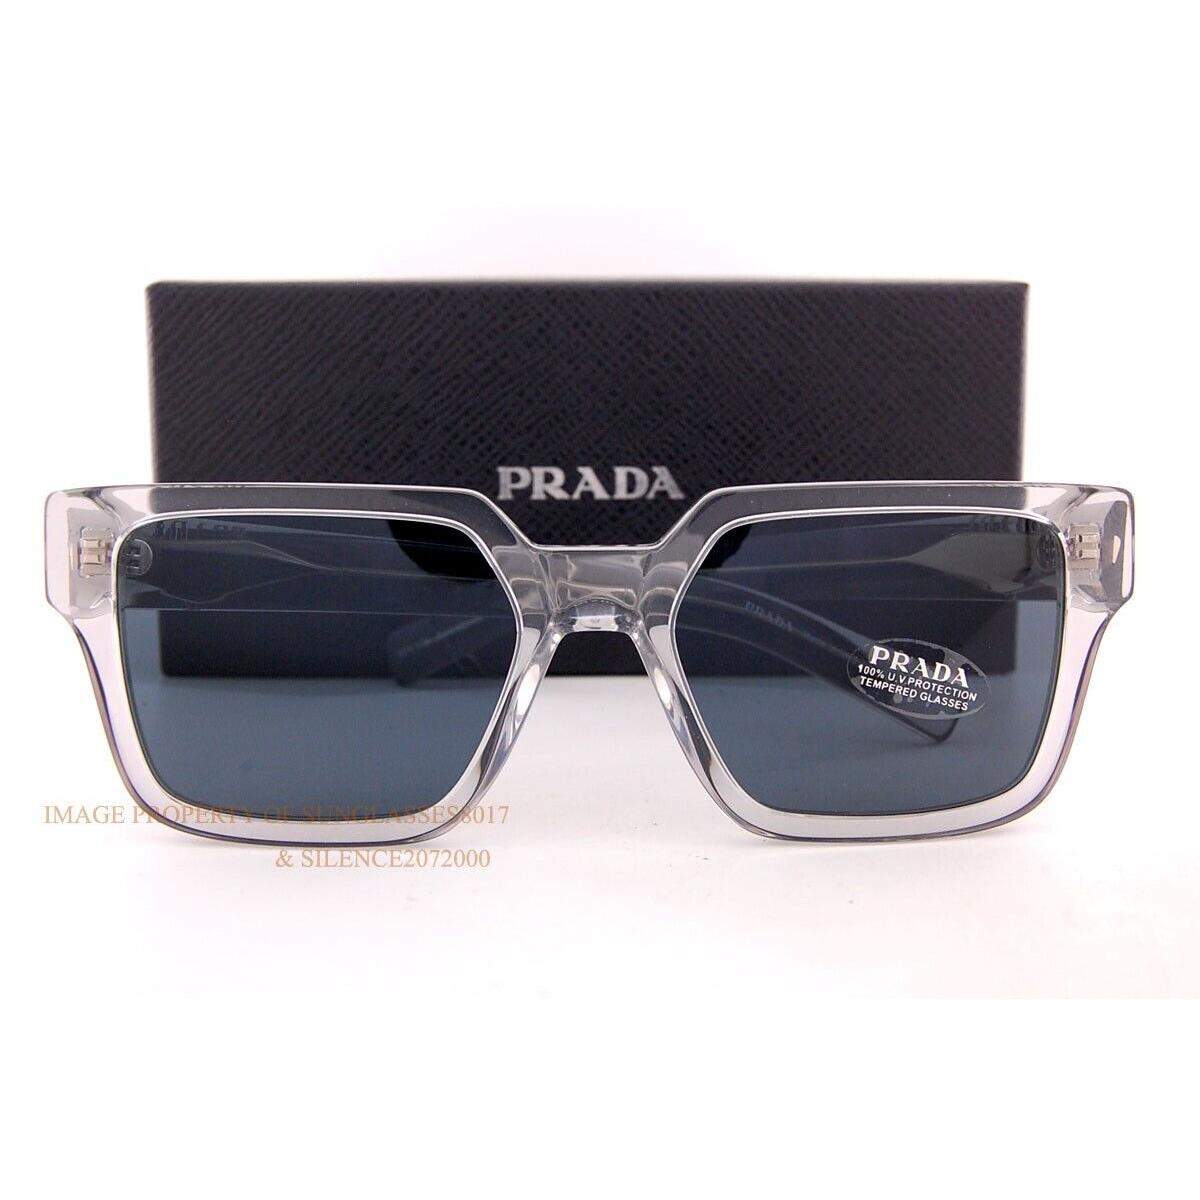 Prada sunglasses  - Grey Transparent Frame, Gray Lens 0